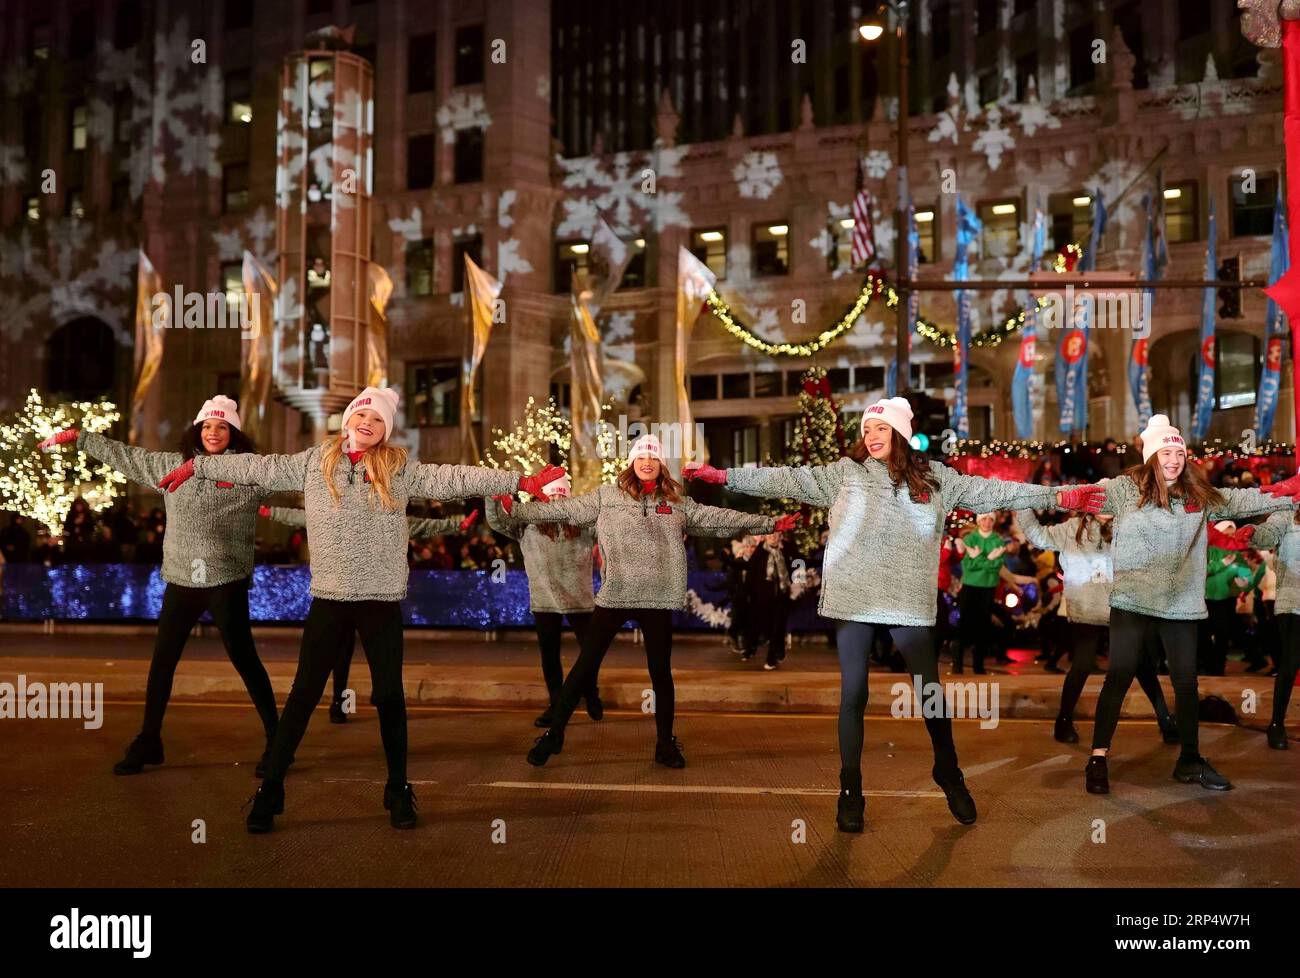 (181118) -- CHICAGO, 18. November 2018 (Xinhua) -- Schauspieler treten bei der 2018 Magnificent Mile Lights Festival Parade auf der North Michigan Avenue in Chicago, USA, am 17. November 2018 auf. Mit Dutzenden von Wagen, Tänzen und Aufführungen, die von lokalen Kunstgruppen und High Schools präsentiert werden, markierte diese Parade den Beginn der jährlichen Weihnachtszeit. (Xinhua/Wang Ping)(dh) U.S.-CHICAGO-LIGHTS FESTIVAL-PARADE PUBLICATIONxNOTxINxCHN Stockfoto